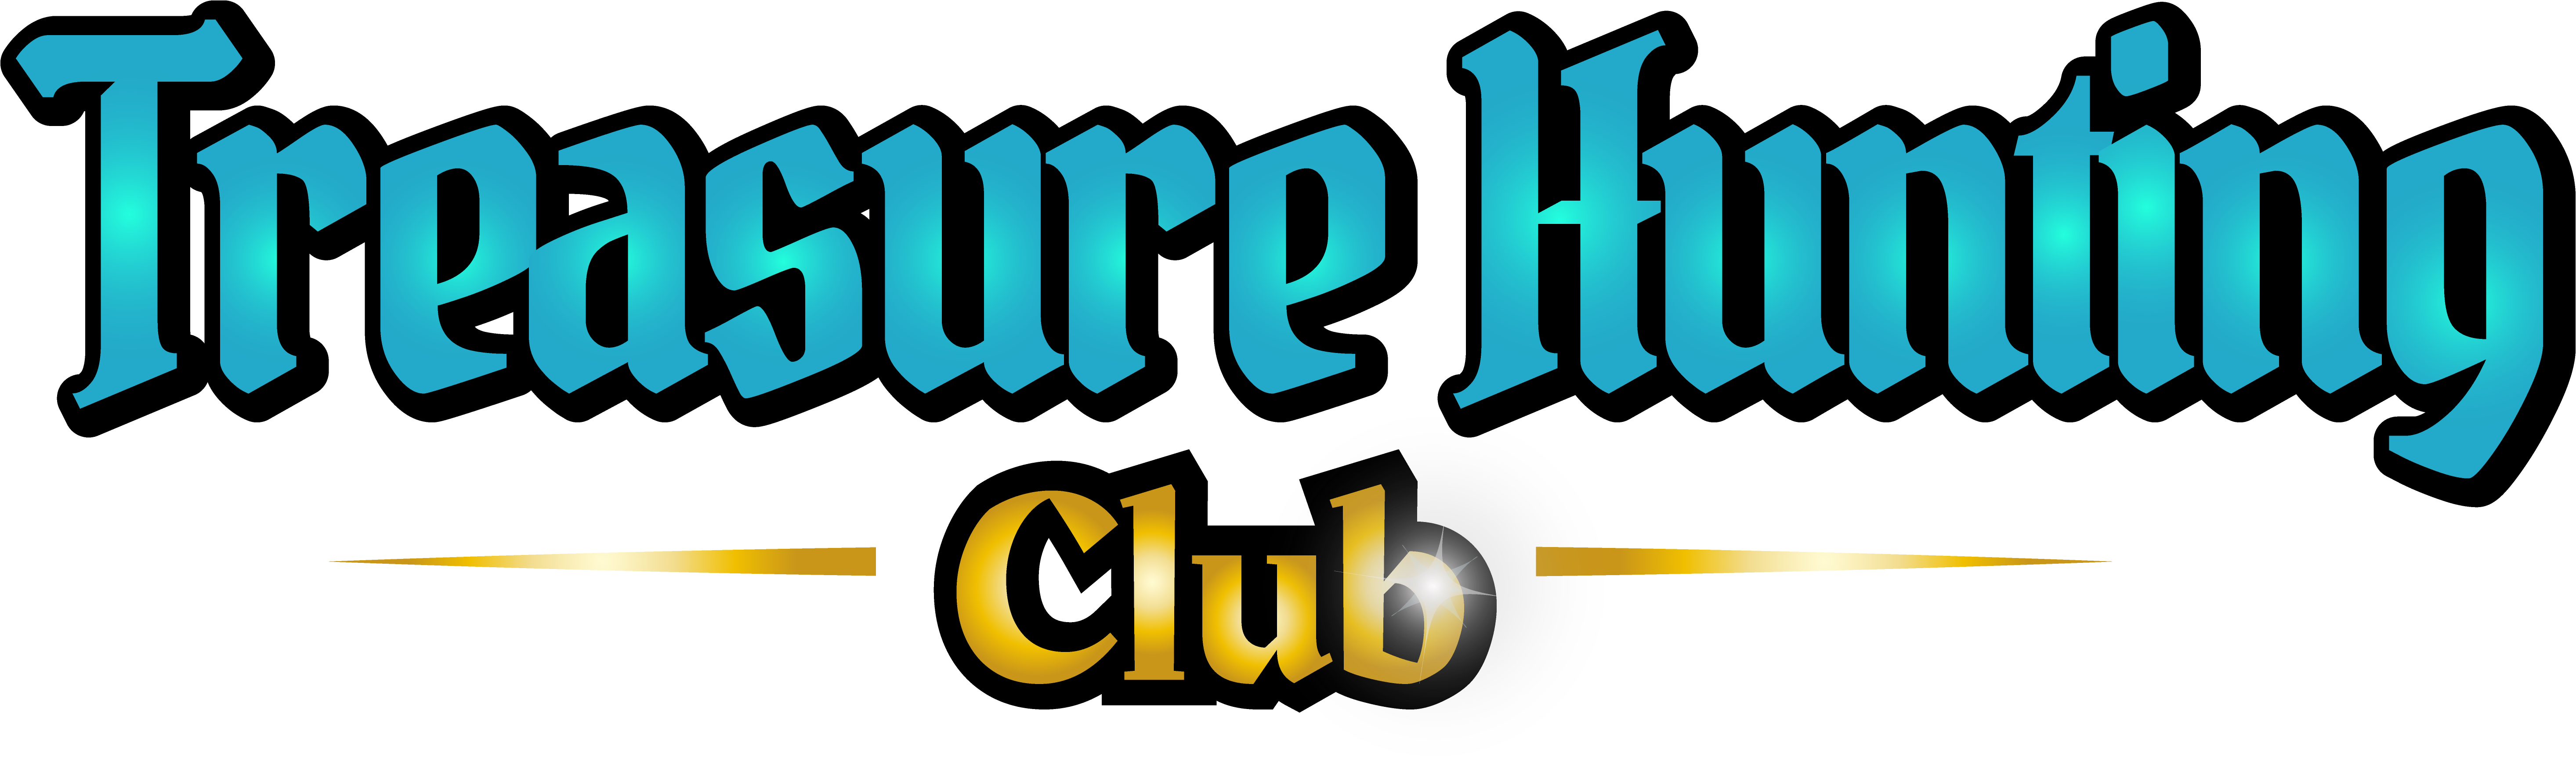 Treasure Hunting Club logo